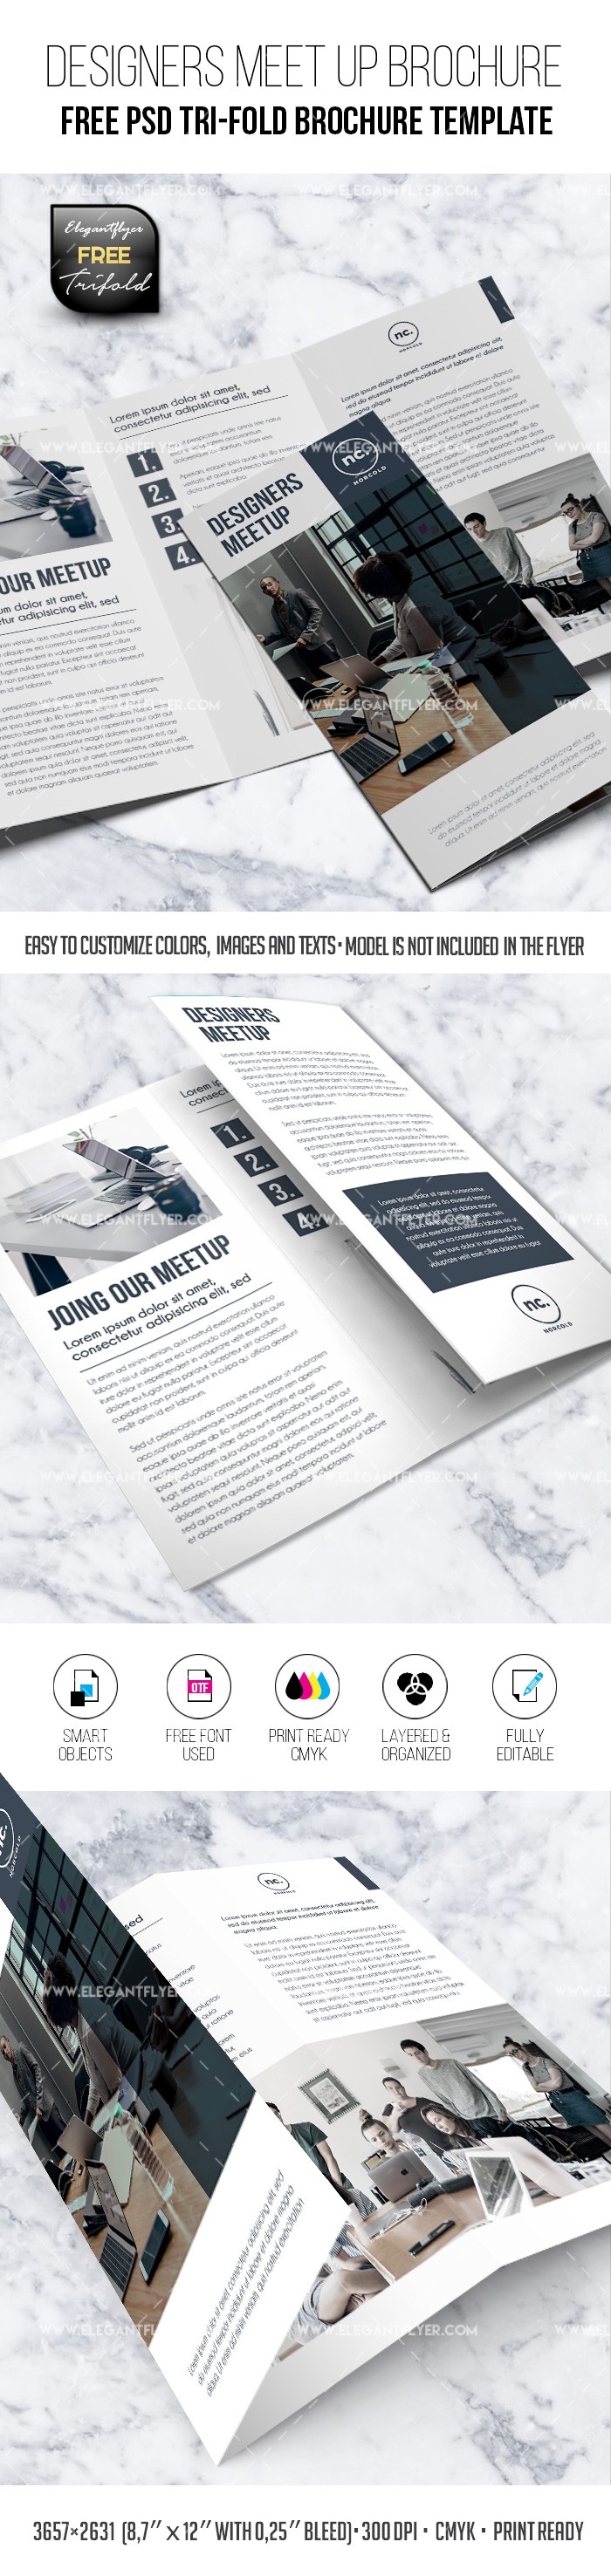 Encontro de Designers - Modelo de Brochura Tri-Fold PSD grátis. by ElegantFlyer